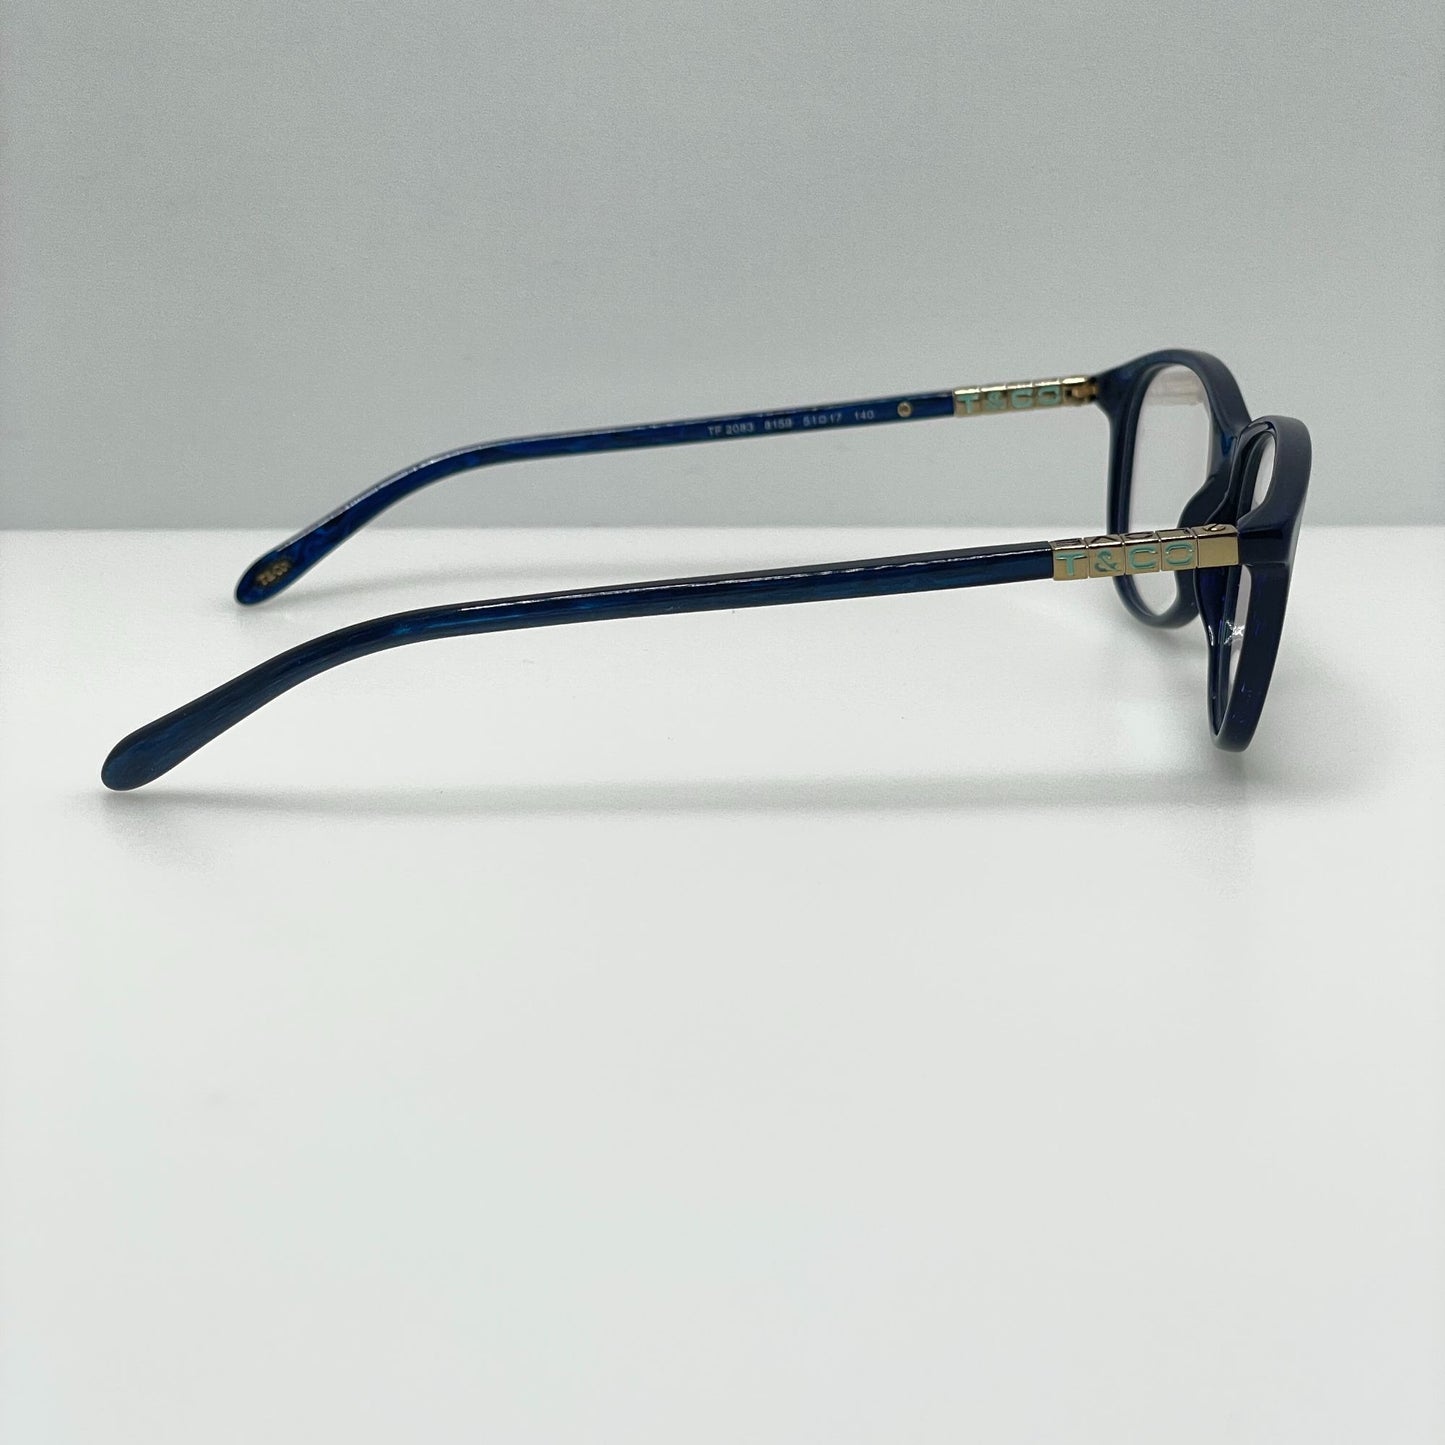 Tiffany & Co. Eyeglasses Eye Glasses Frames TF 2083 8159 53-17-140